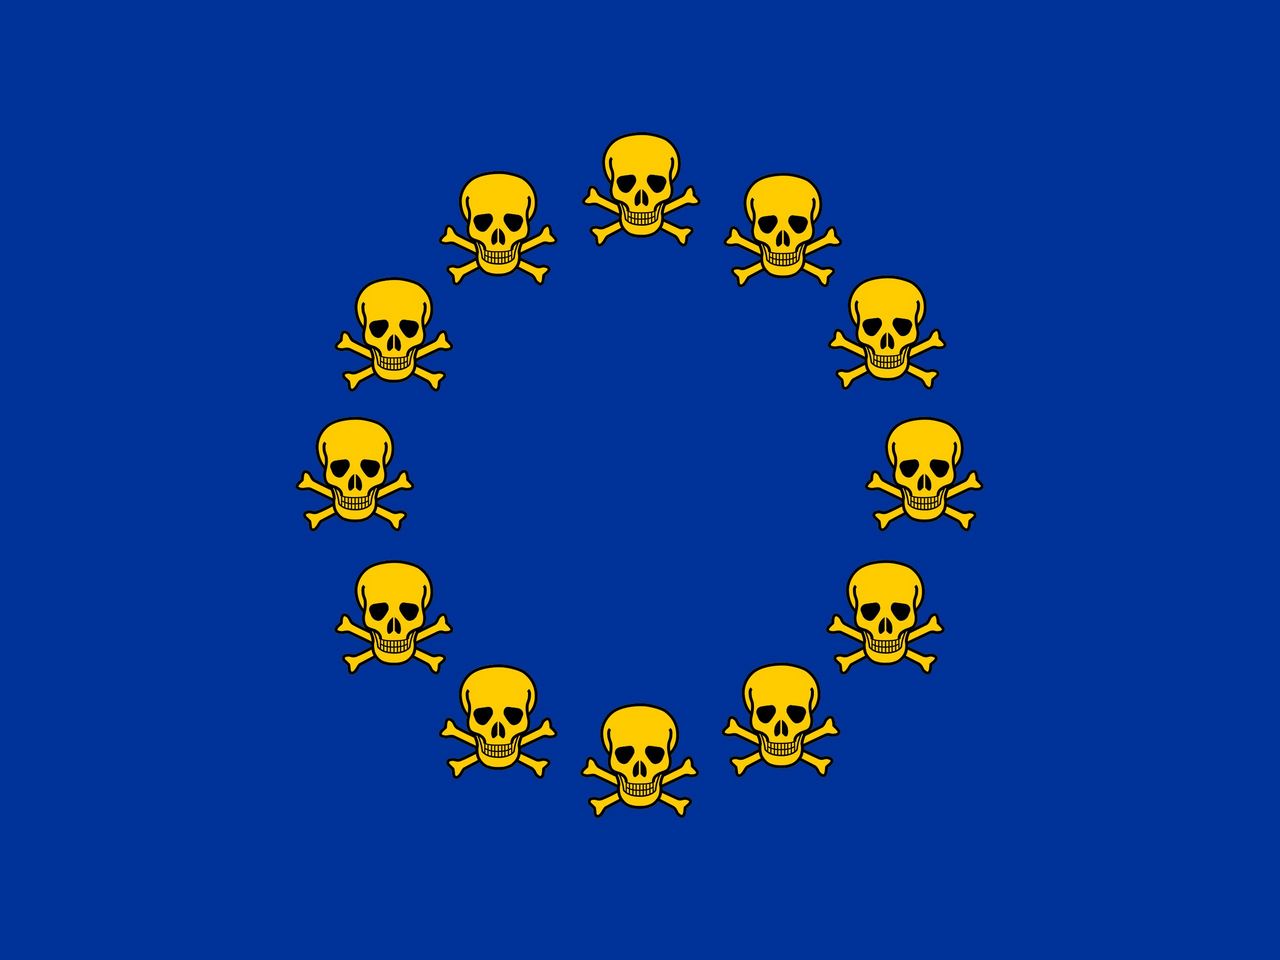 Evropská unie 1280x960. Tapeta, wallpaper, obrázek zdarma ke stažení